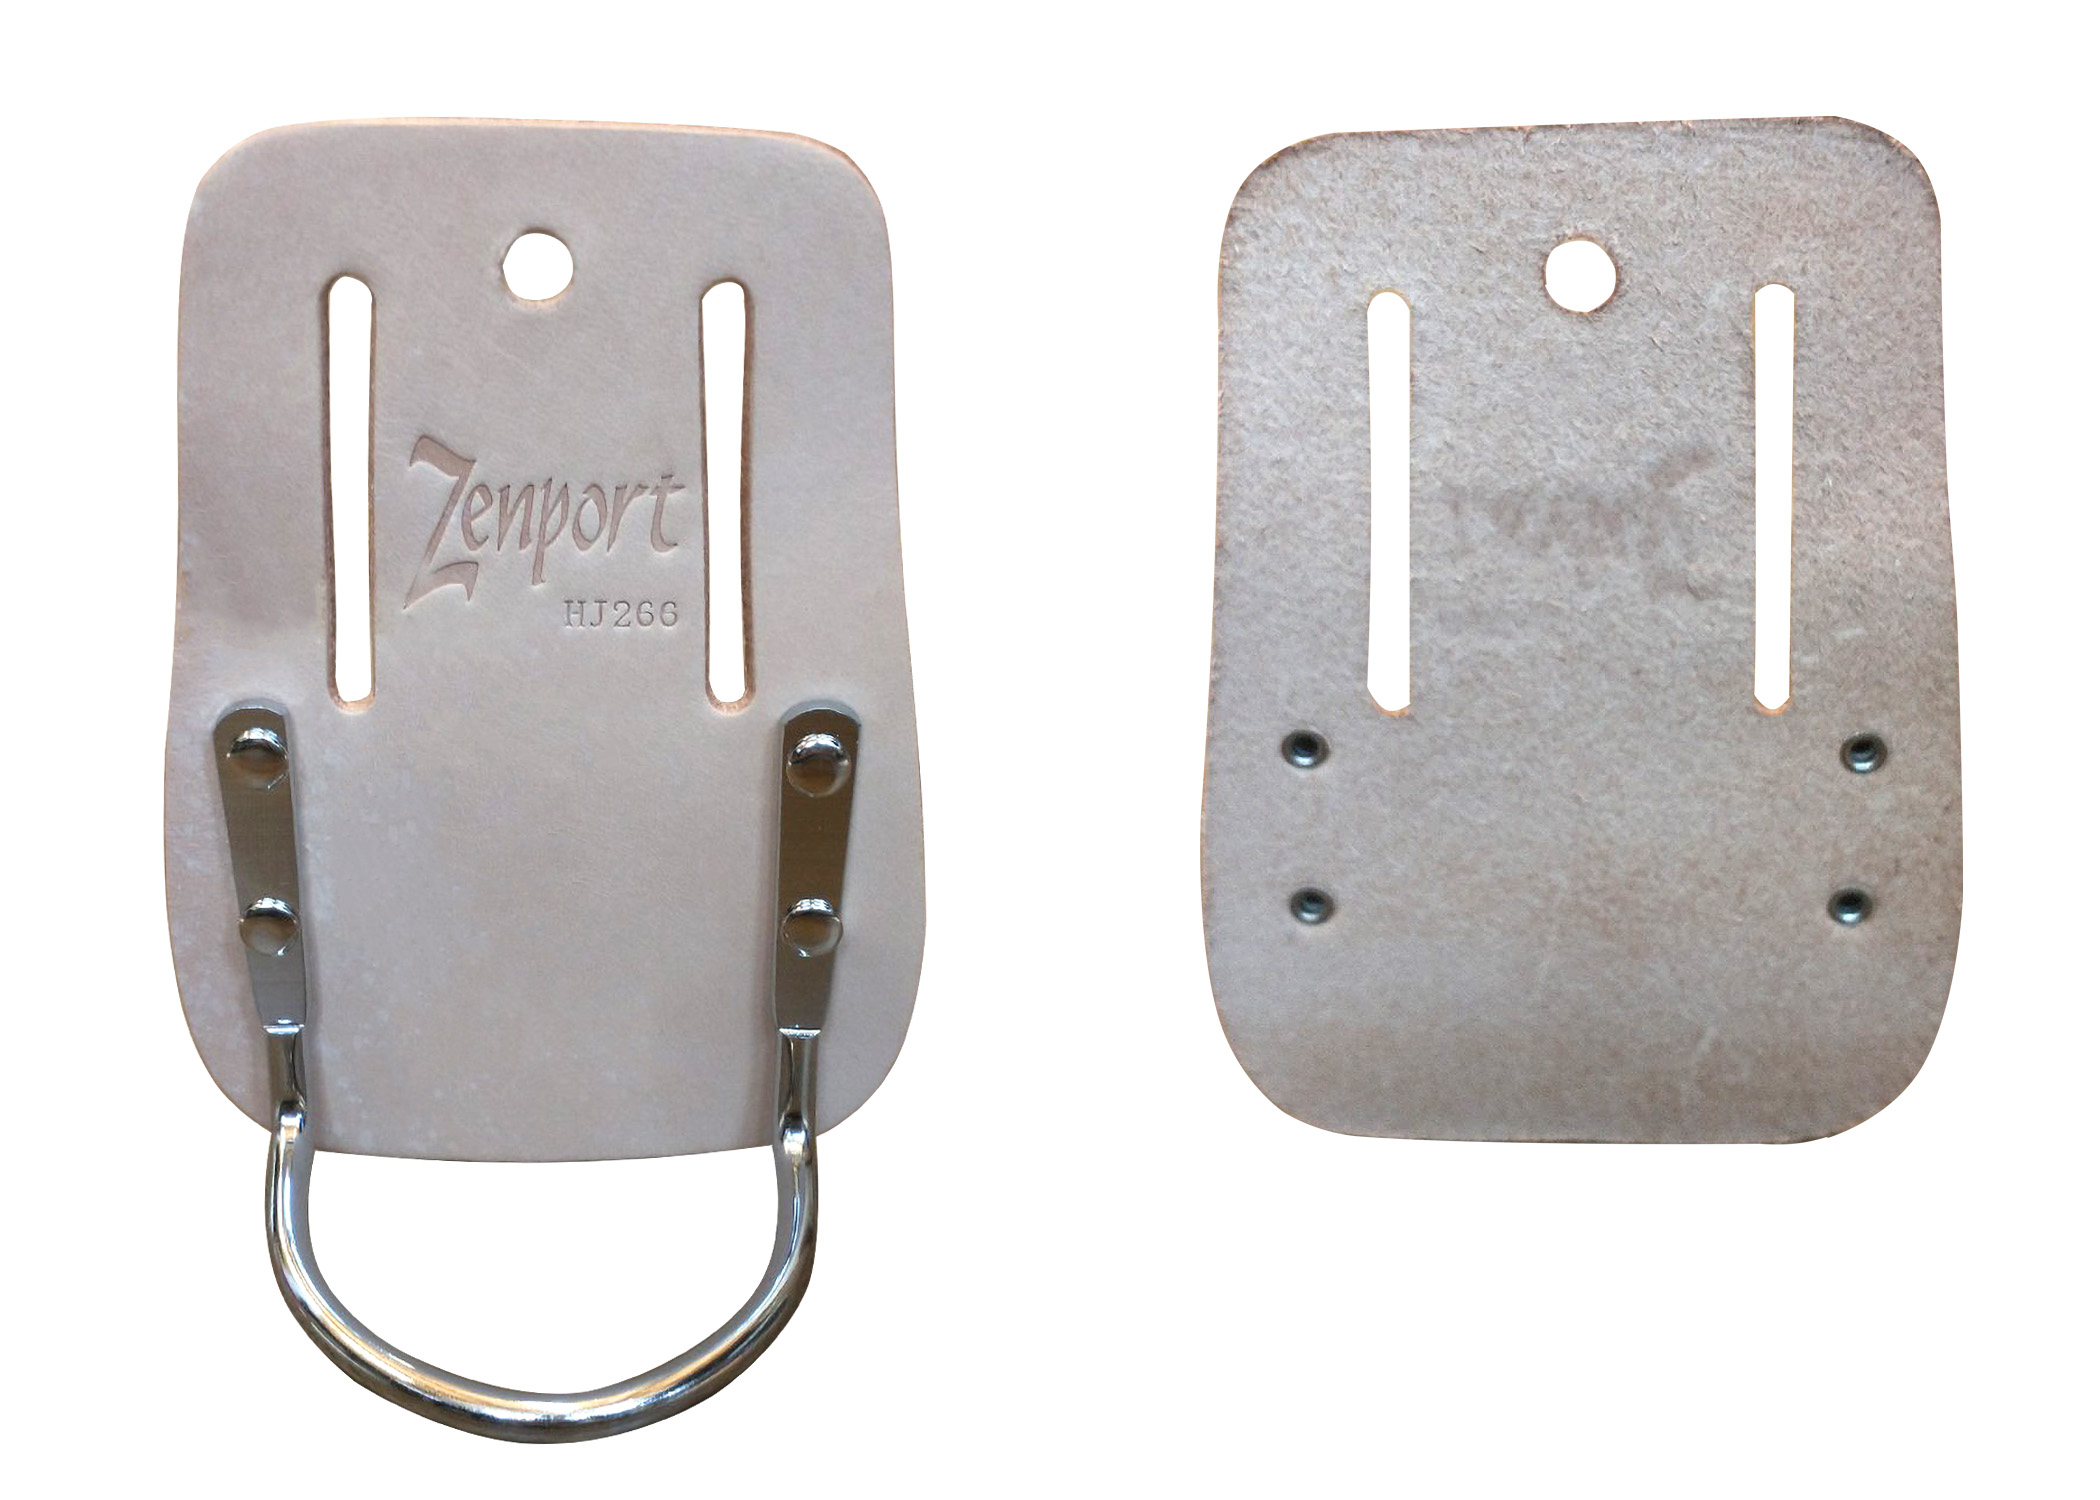 Zenport Holster HJ266 Saddle Leather Tool Belt Hammer Holder